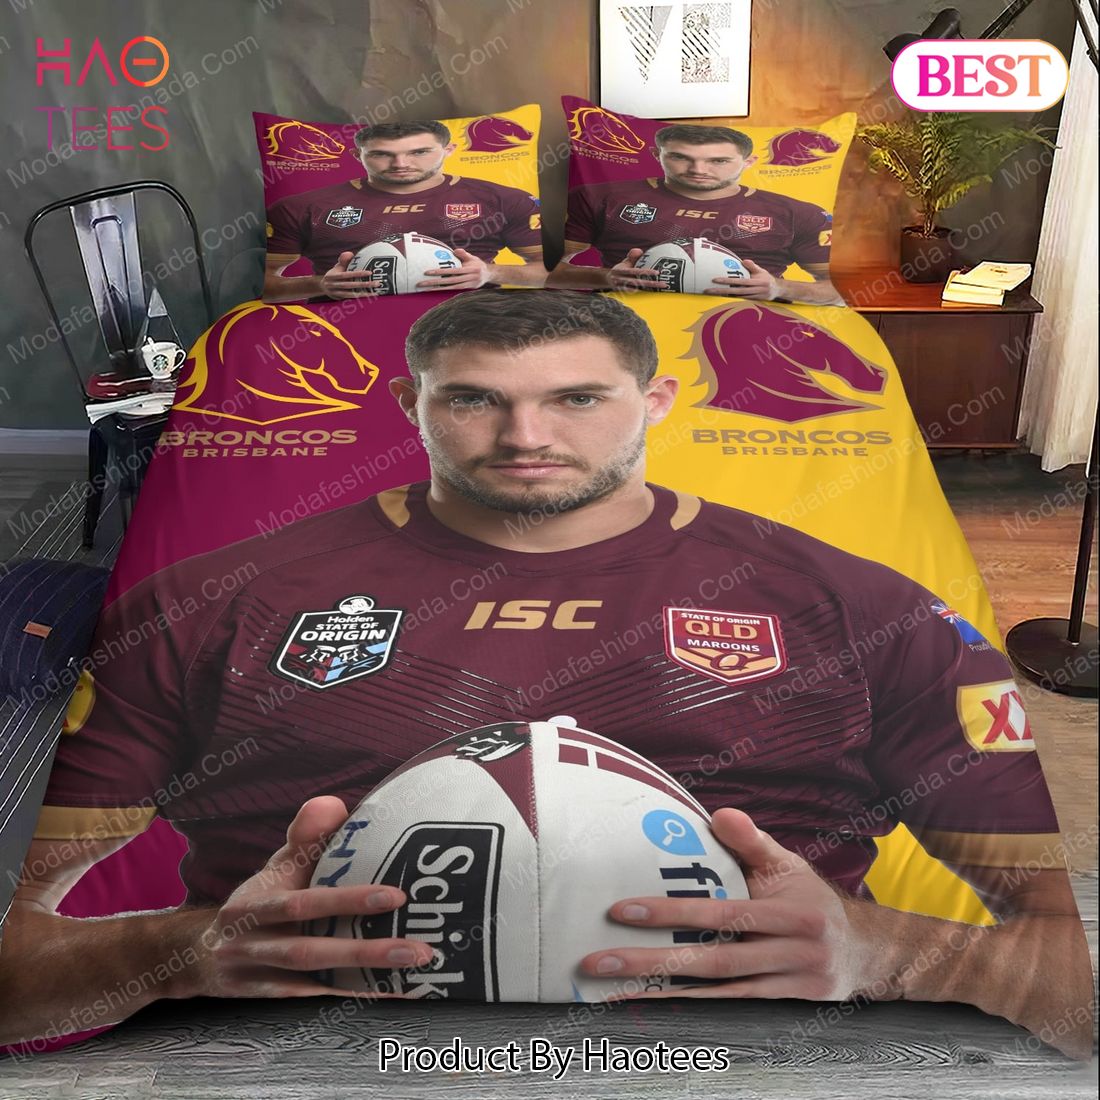 AVAILABLE Corey Oates Brisbane Broncos Bedding Sets Bed Sets, Bedroom Sets, Comforter Sets, Duvet Cover, Bedspread